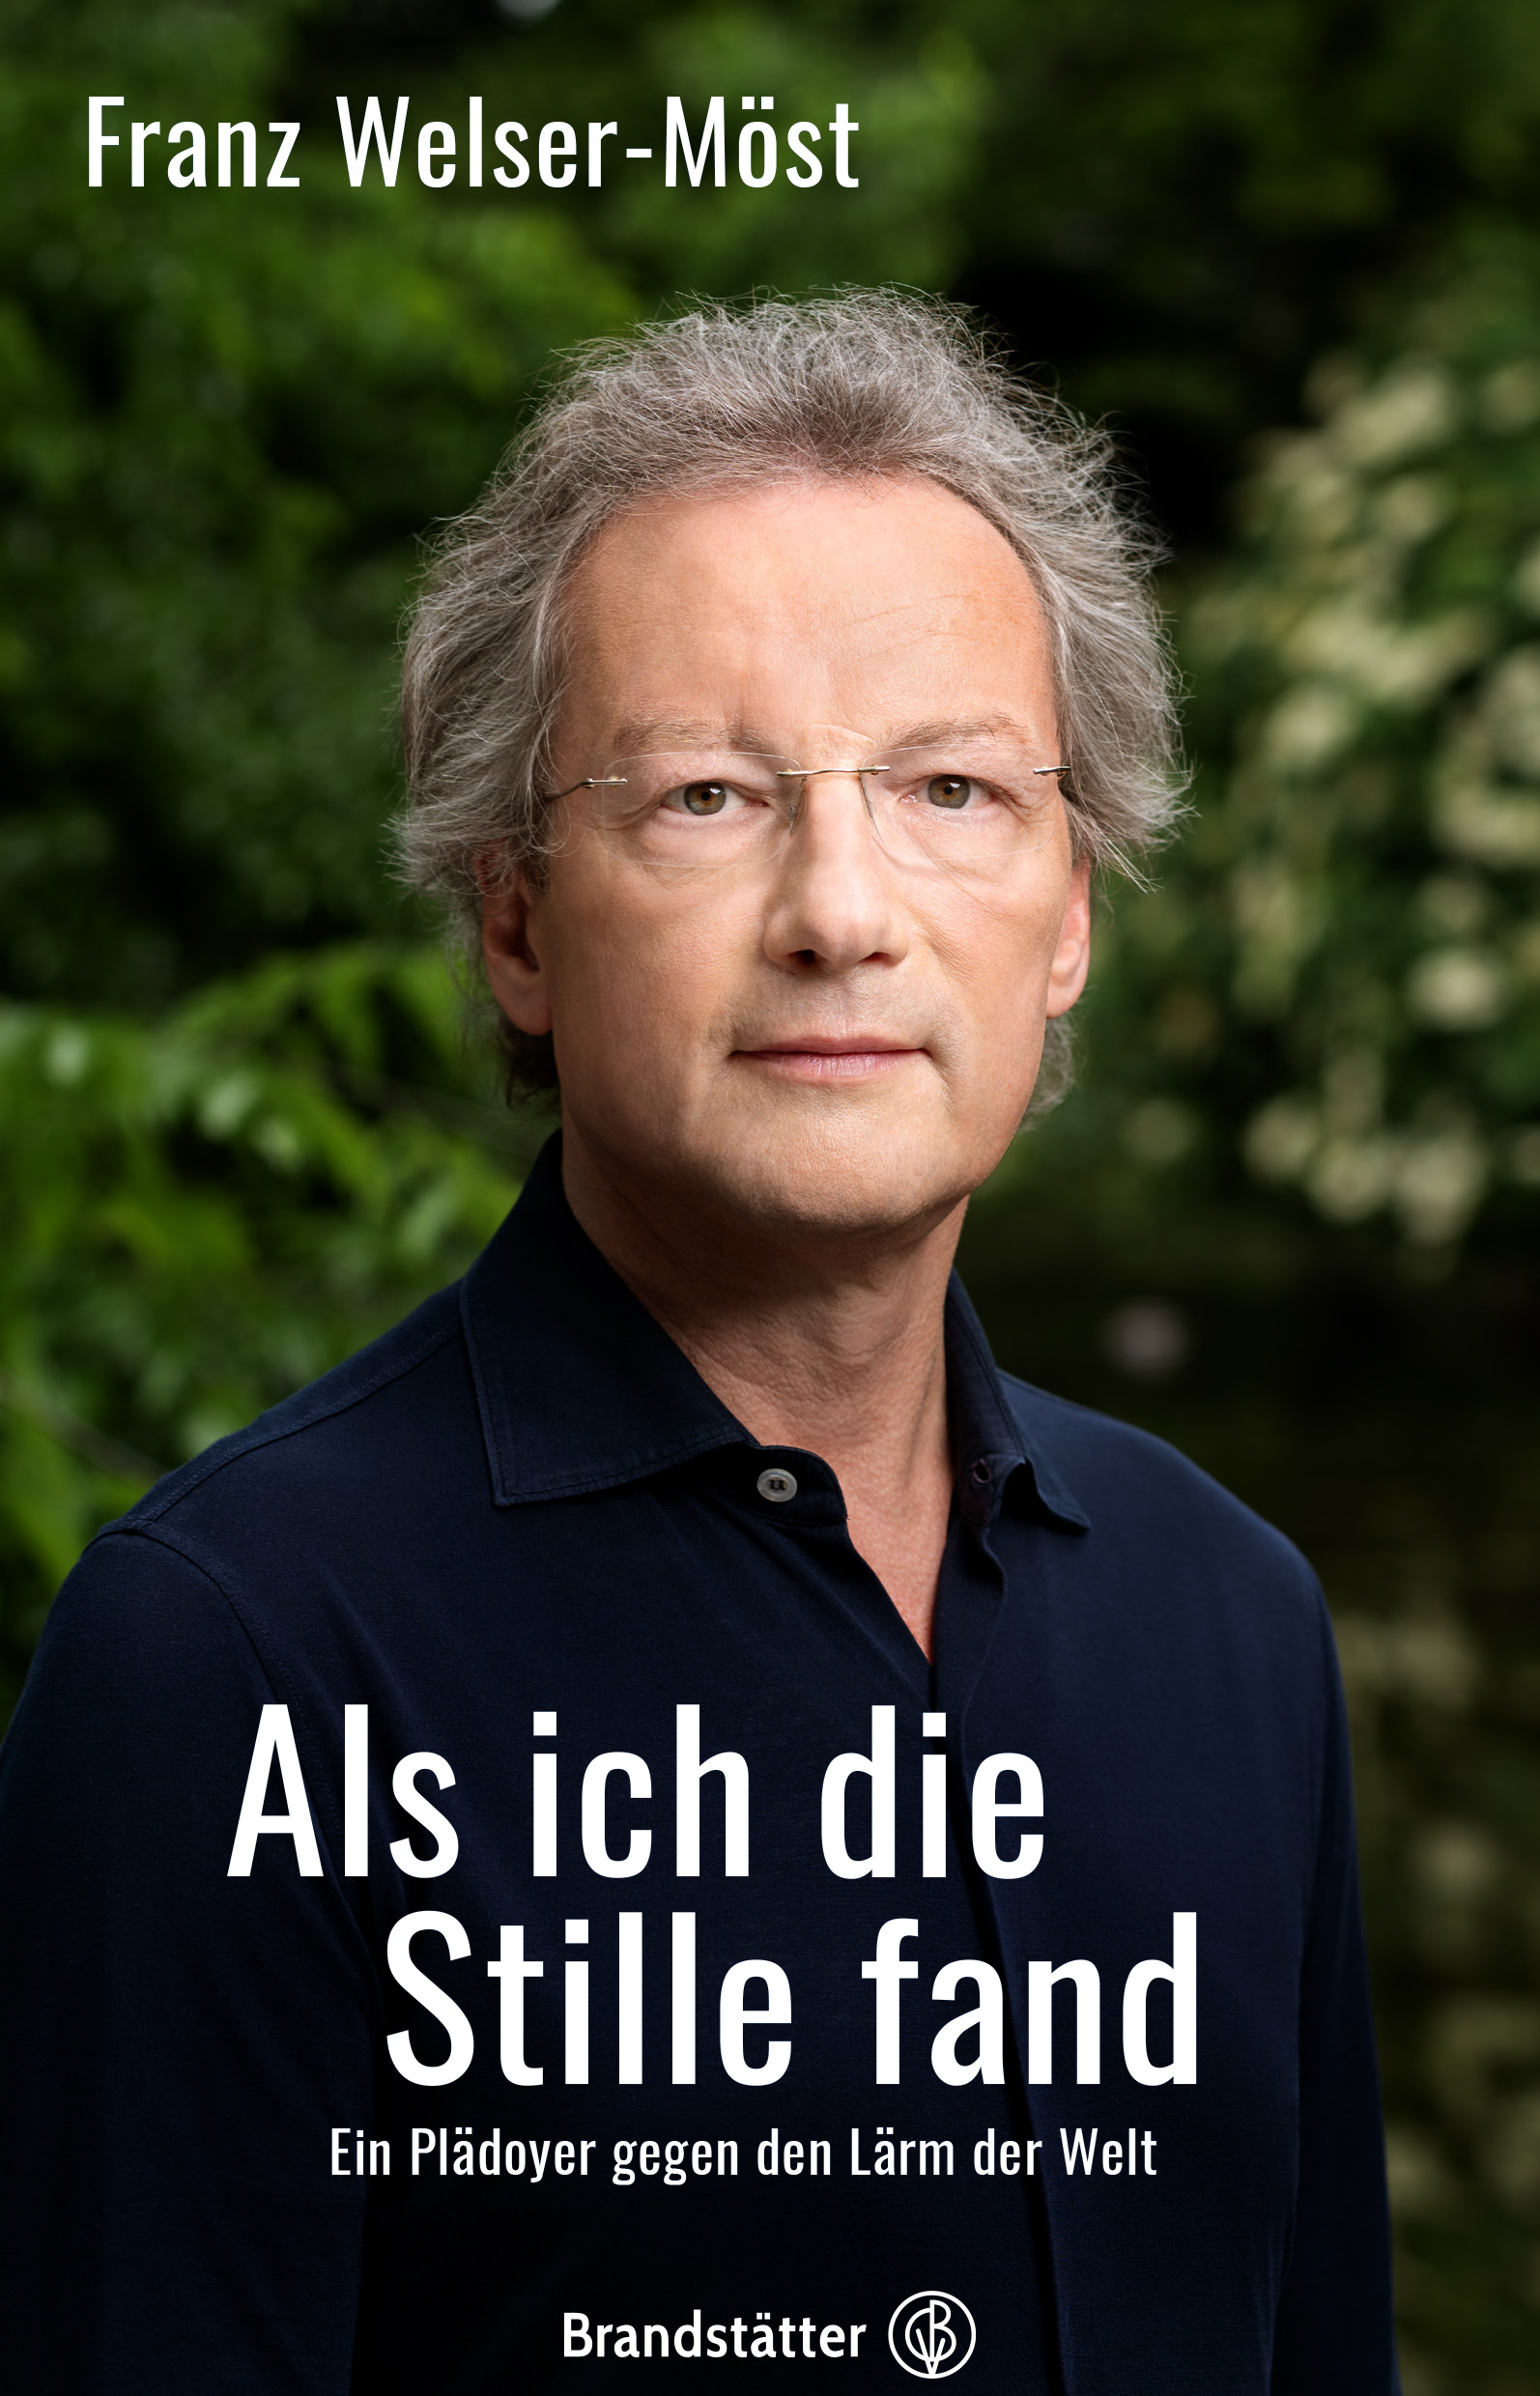 Franz Welser-Möst und sein neues Buch "Als ich die Stille fand", Brandstätter Verlag